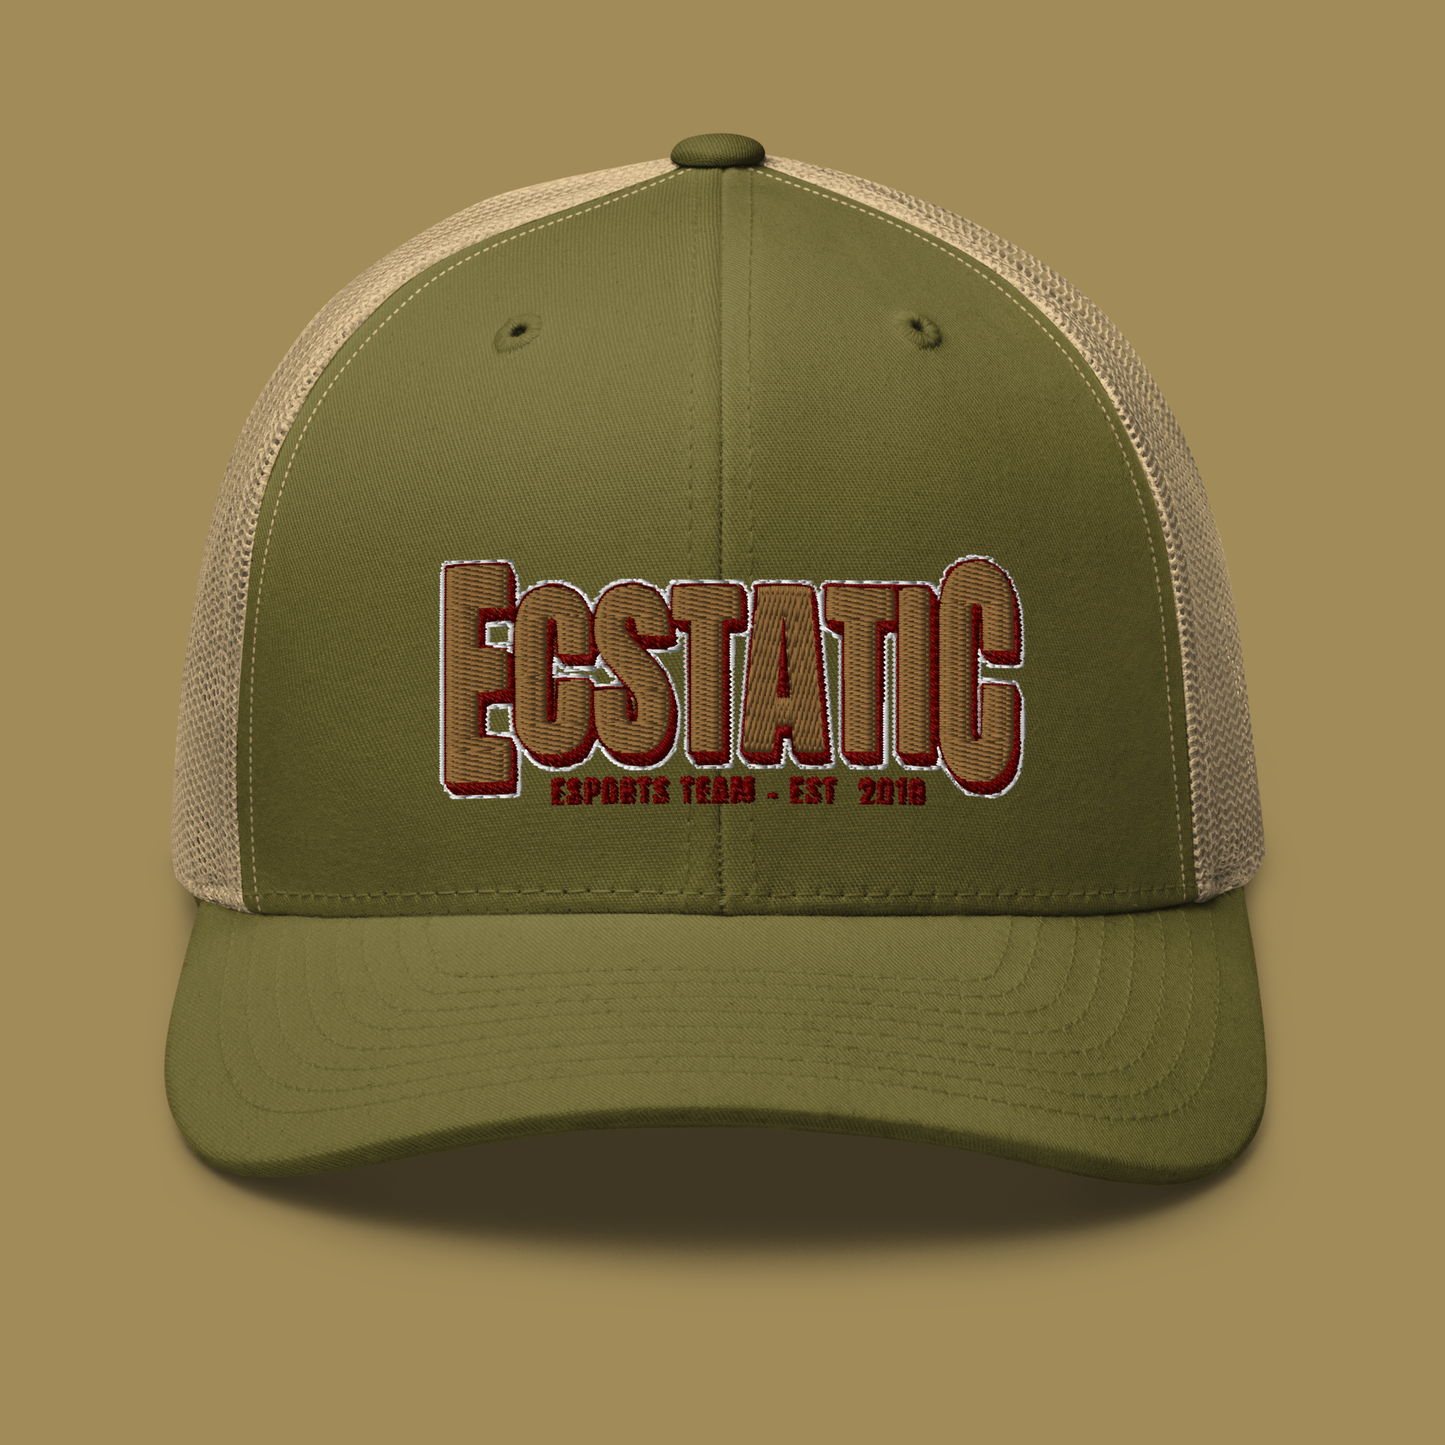 ECSTATIC Retro Trucker Cap - Moss/Khaki